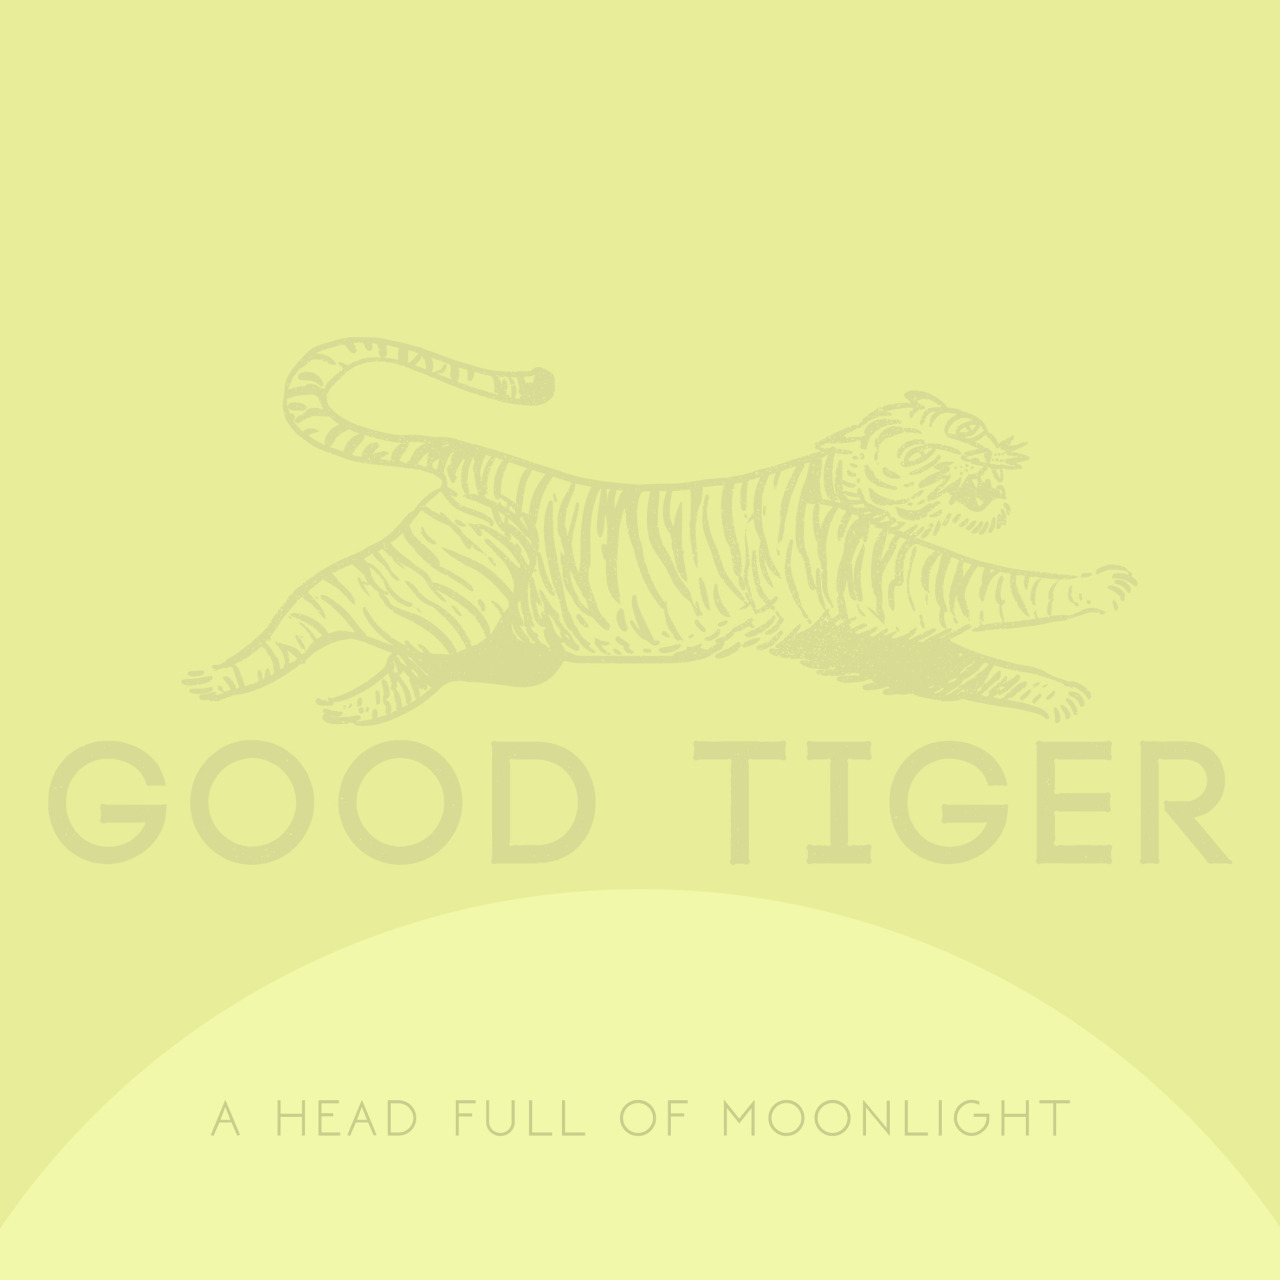 Good Tiger – A Head Full of Moonlight